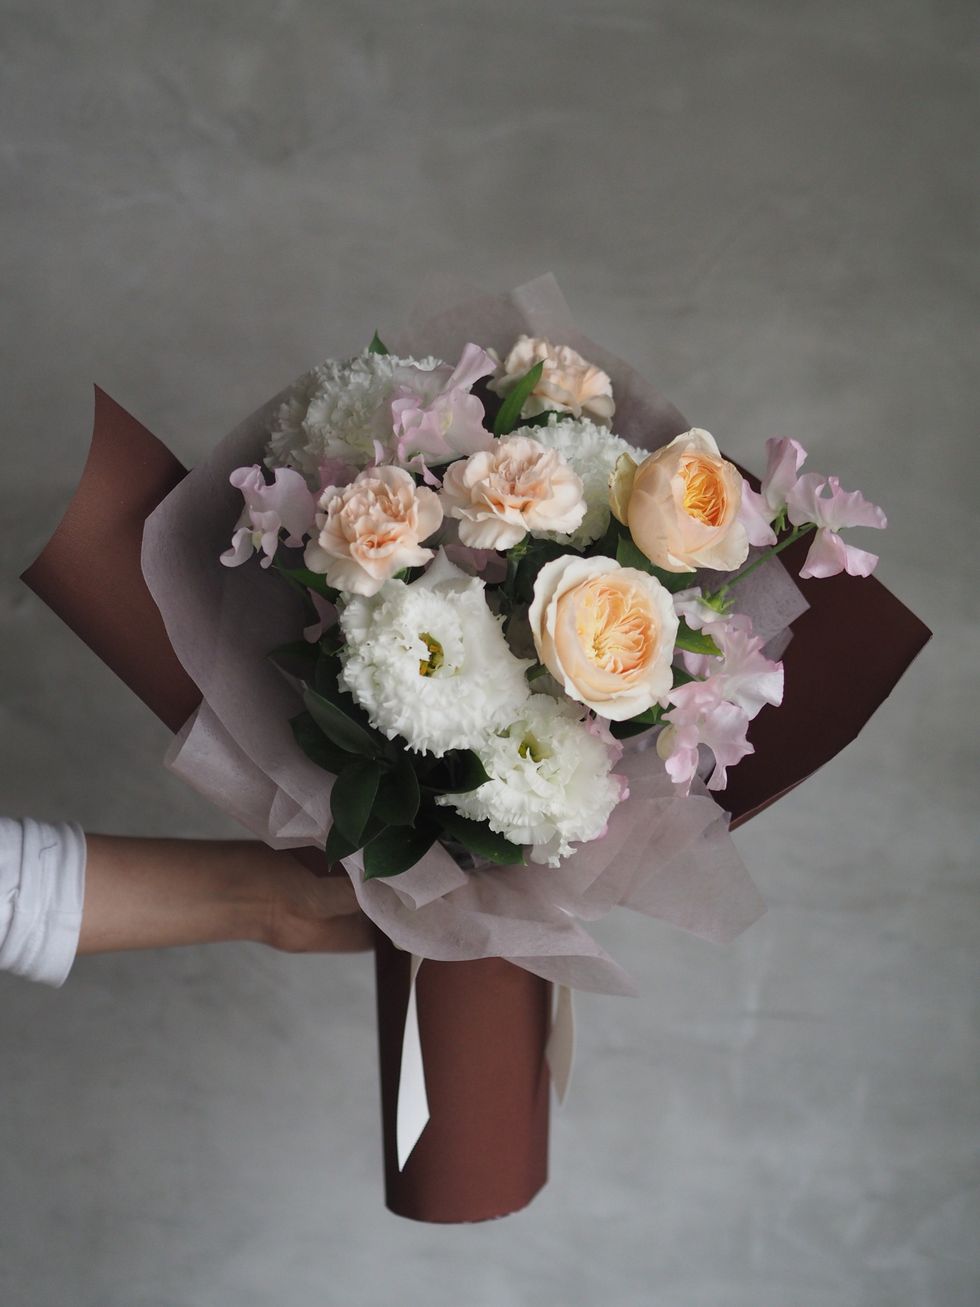 母親節送禮花束推薦！絕美永生康乃馨玫瑰花、浪漫胭脂粉藍玫瑰打動媽媽的心